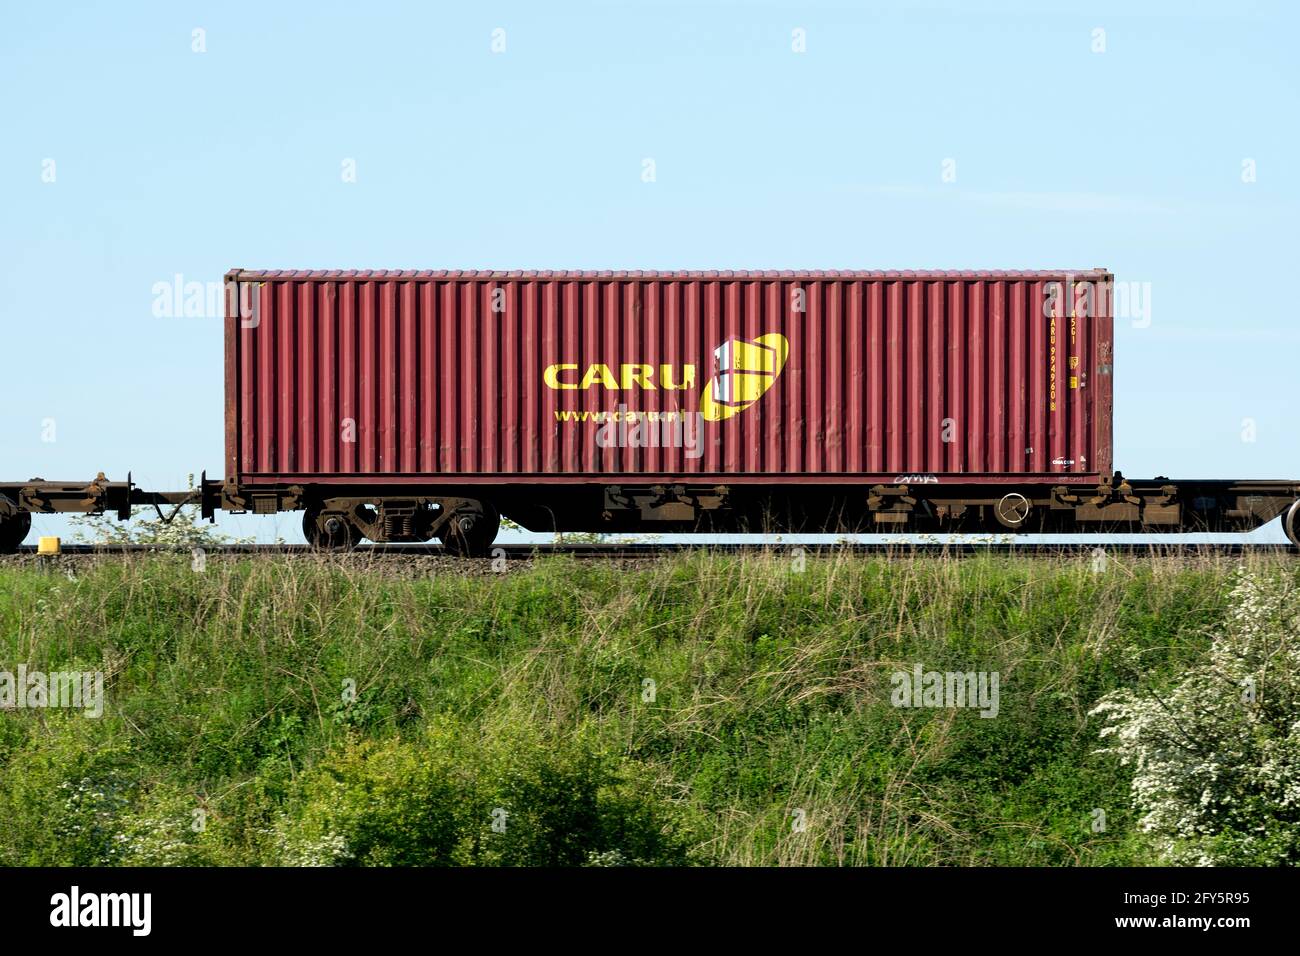 Contenitore di trasporto CARU su un treno freightliner, Warwickshire, Regno Unito Foto Stock